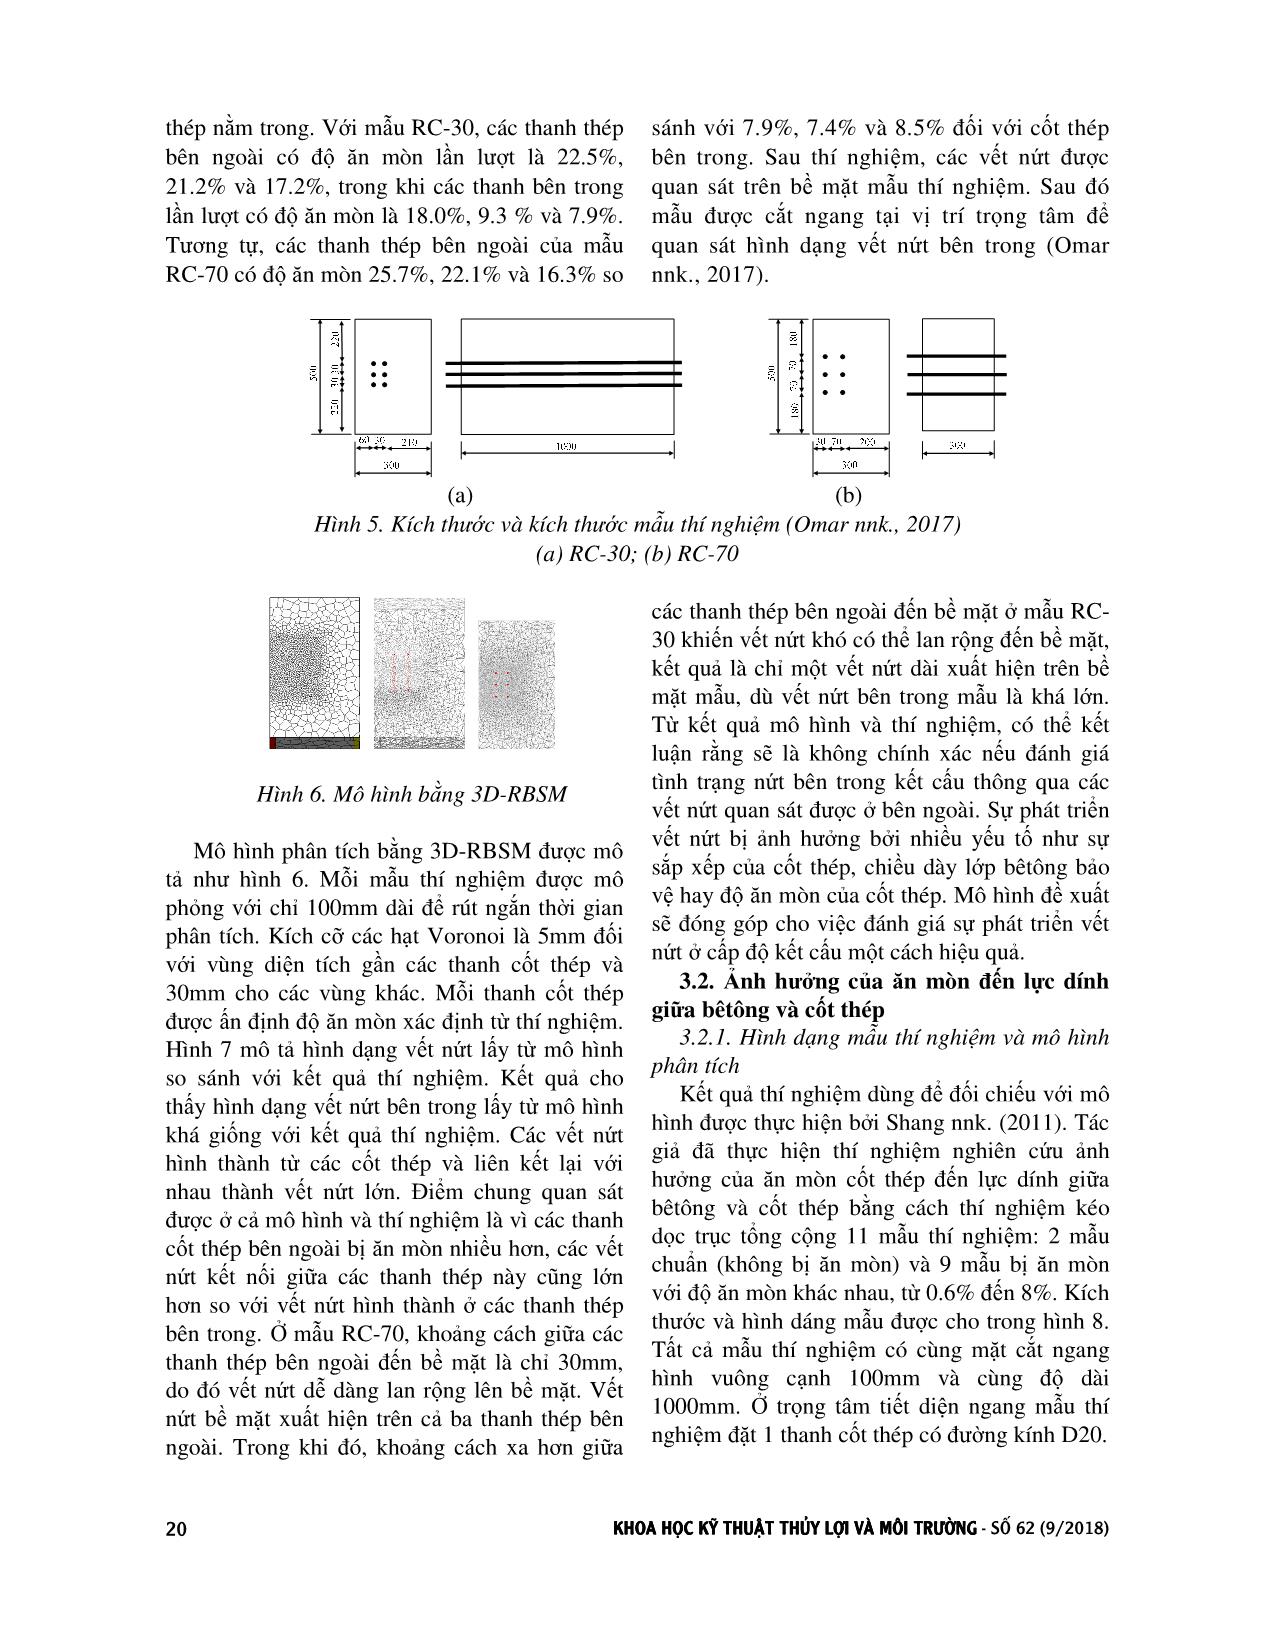 Nghiên cứu ảnh hưởng của hiện tượng ăn mòn cốt thép đến kết cấu bêtông cốt thép bằng mô hình 3D-RBSM trang 4